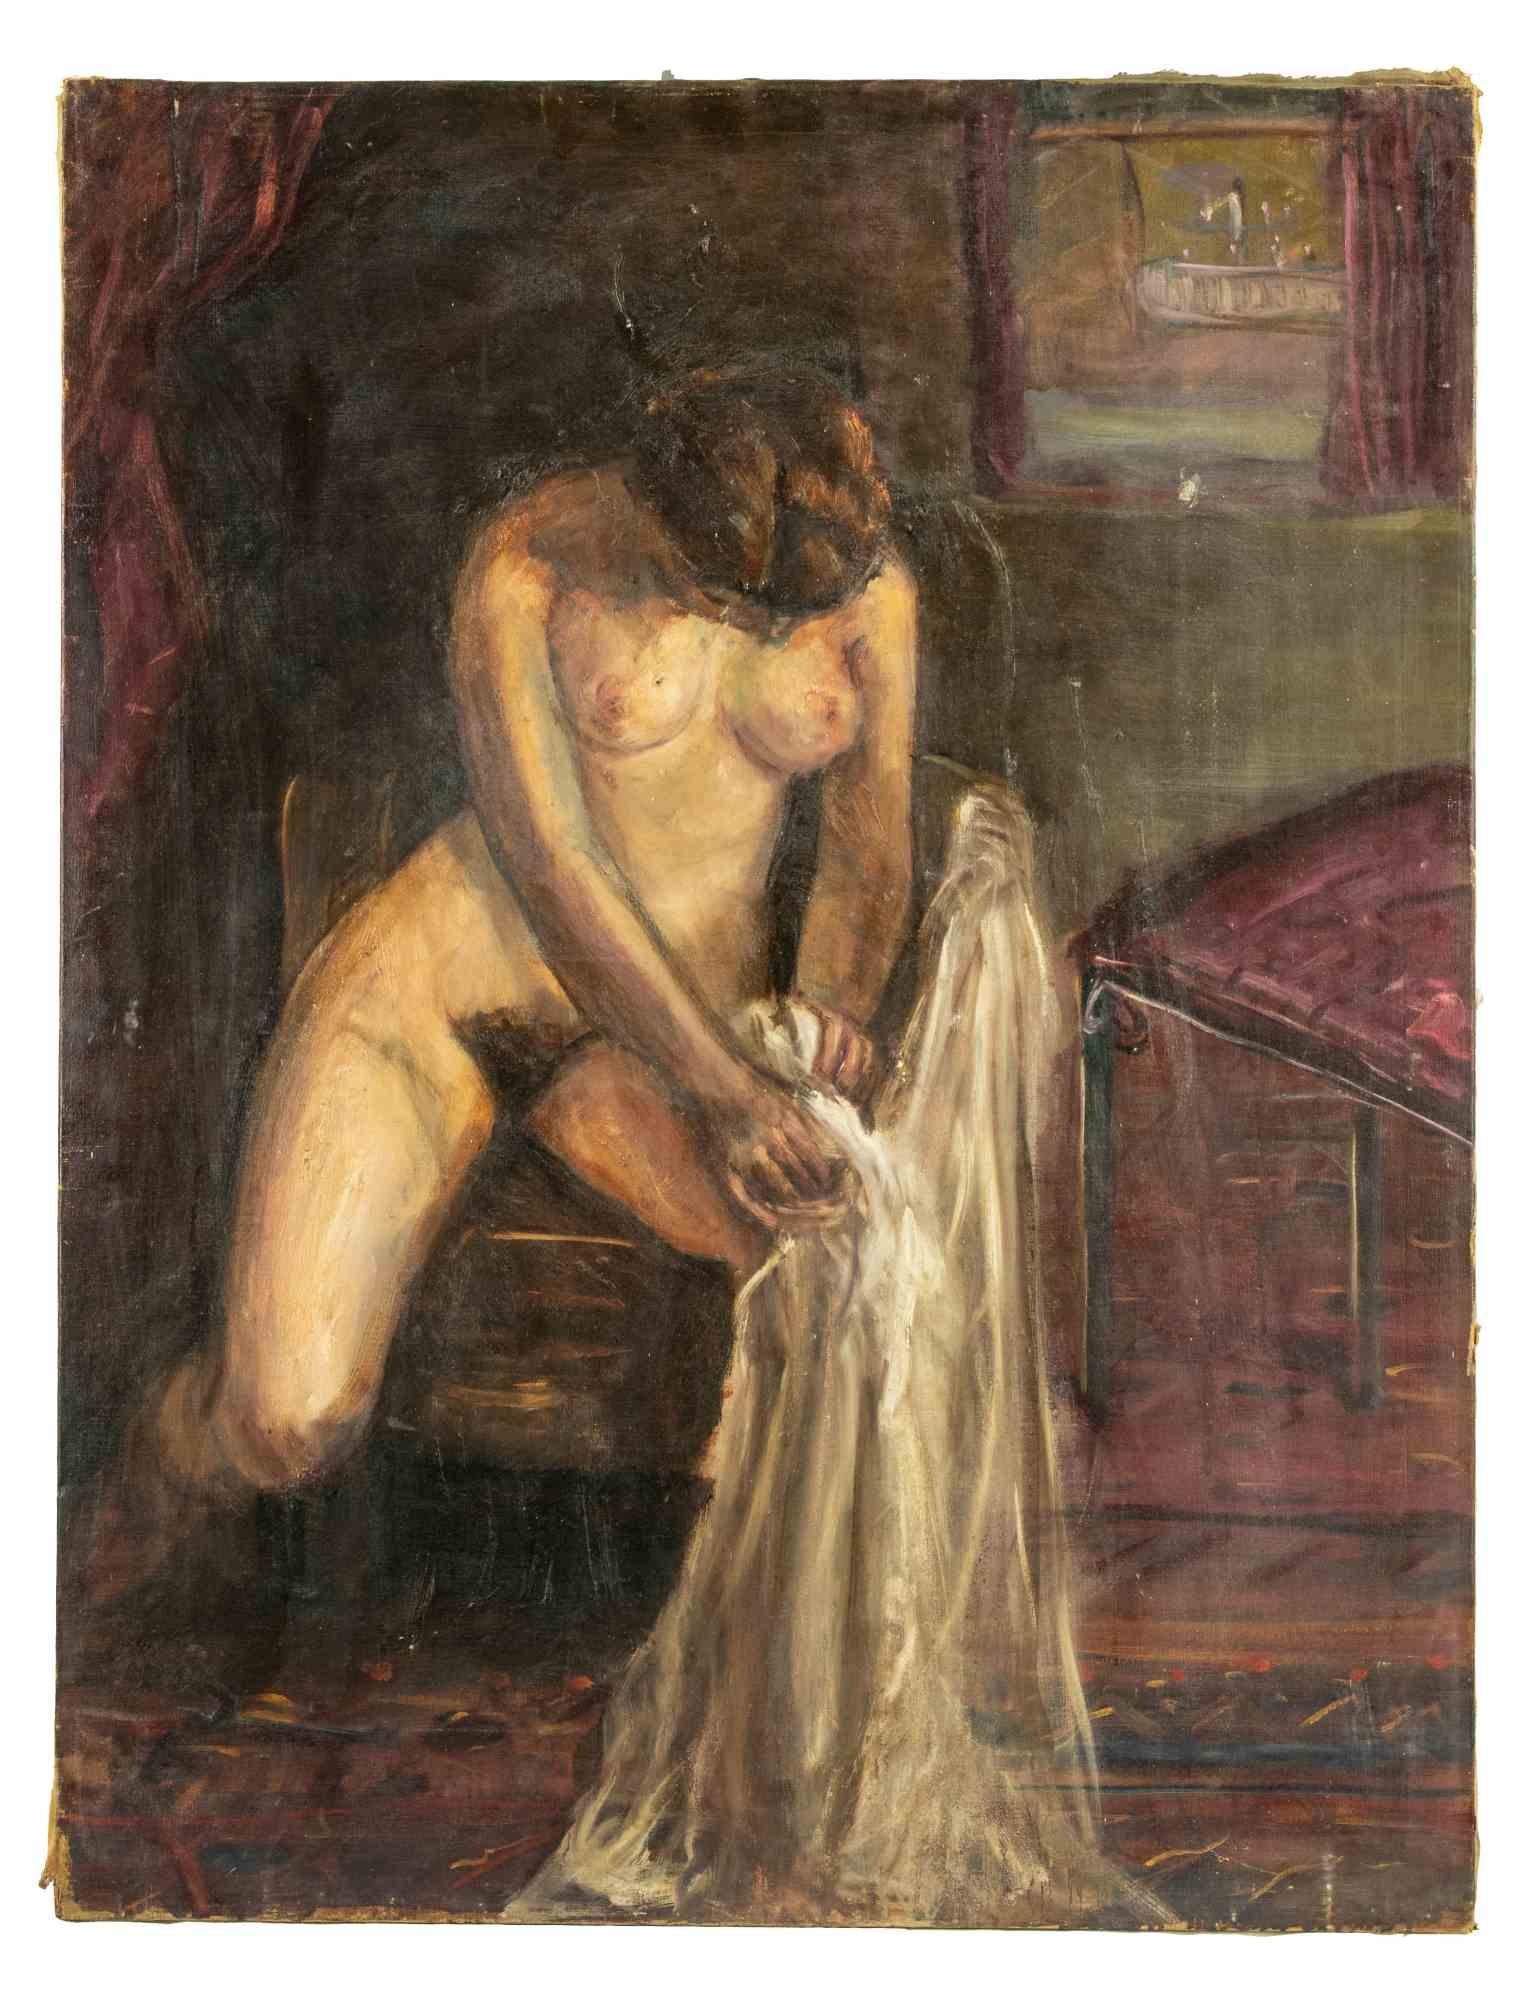 Der Frauenakt ist ein schönes und beeindruckendes Ölgemälde von Antonio Feltrinelli.

Es entstand zwischen Ende der 1920er und Anfang der 1930er Jahre und stellt eine nackte Frau dar.

Akte und Porträts gehörten zu Feltrinellis bevorzugten Porträts